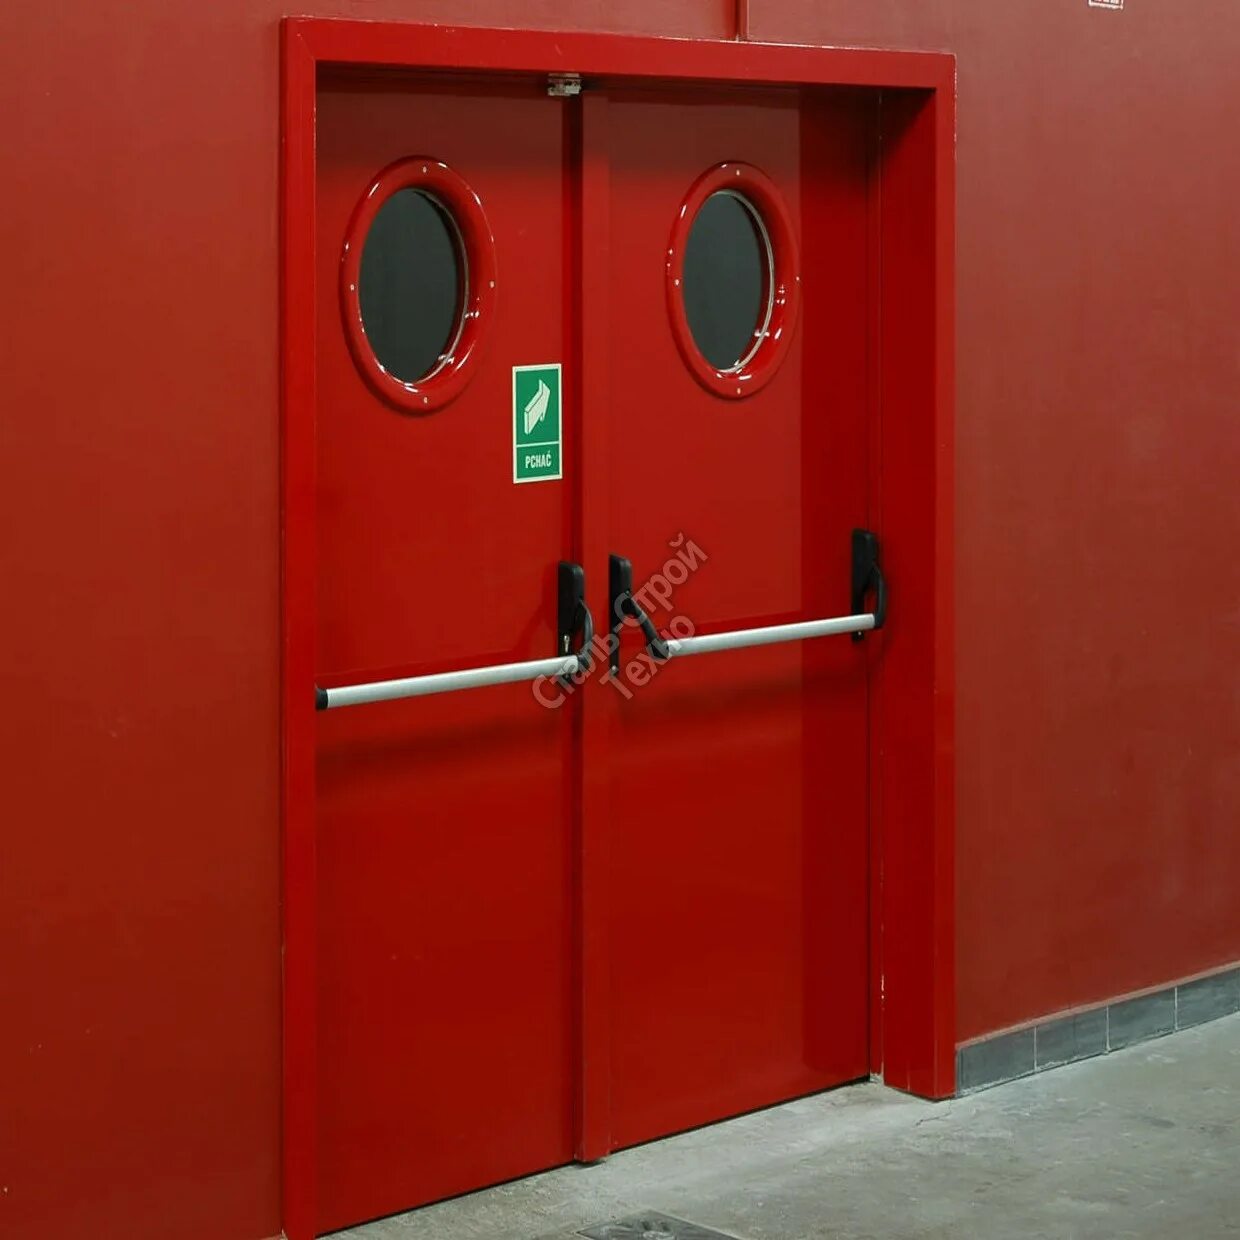 Безопасность противопожарная дверь. Дверь металлическая противопожарная антипаника. Двери антипаника по пожарной безопасности. Красная противопожарная дверь. Дверь с антипаникой.